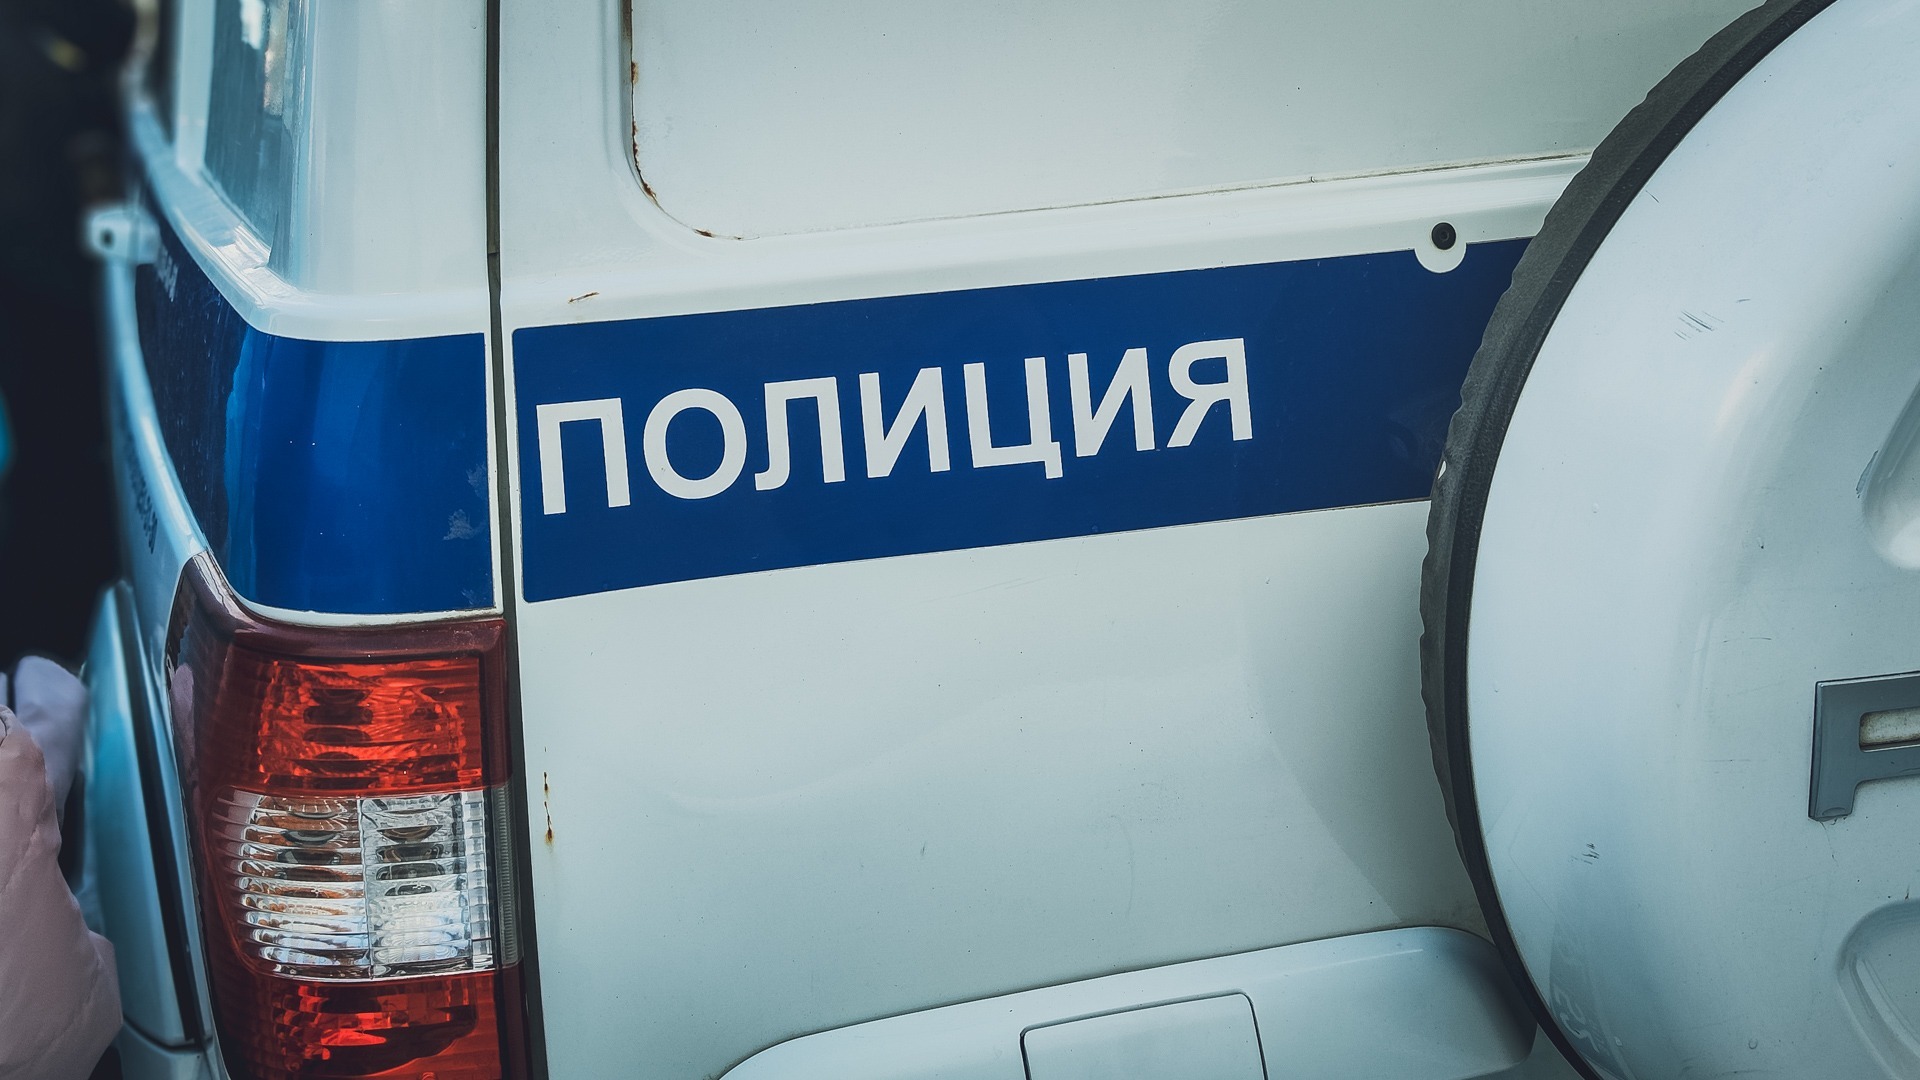 Полицейские разыскивают пропавшего 7-летнего мальчика во Владивостоке